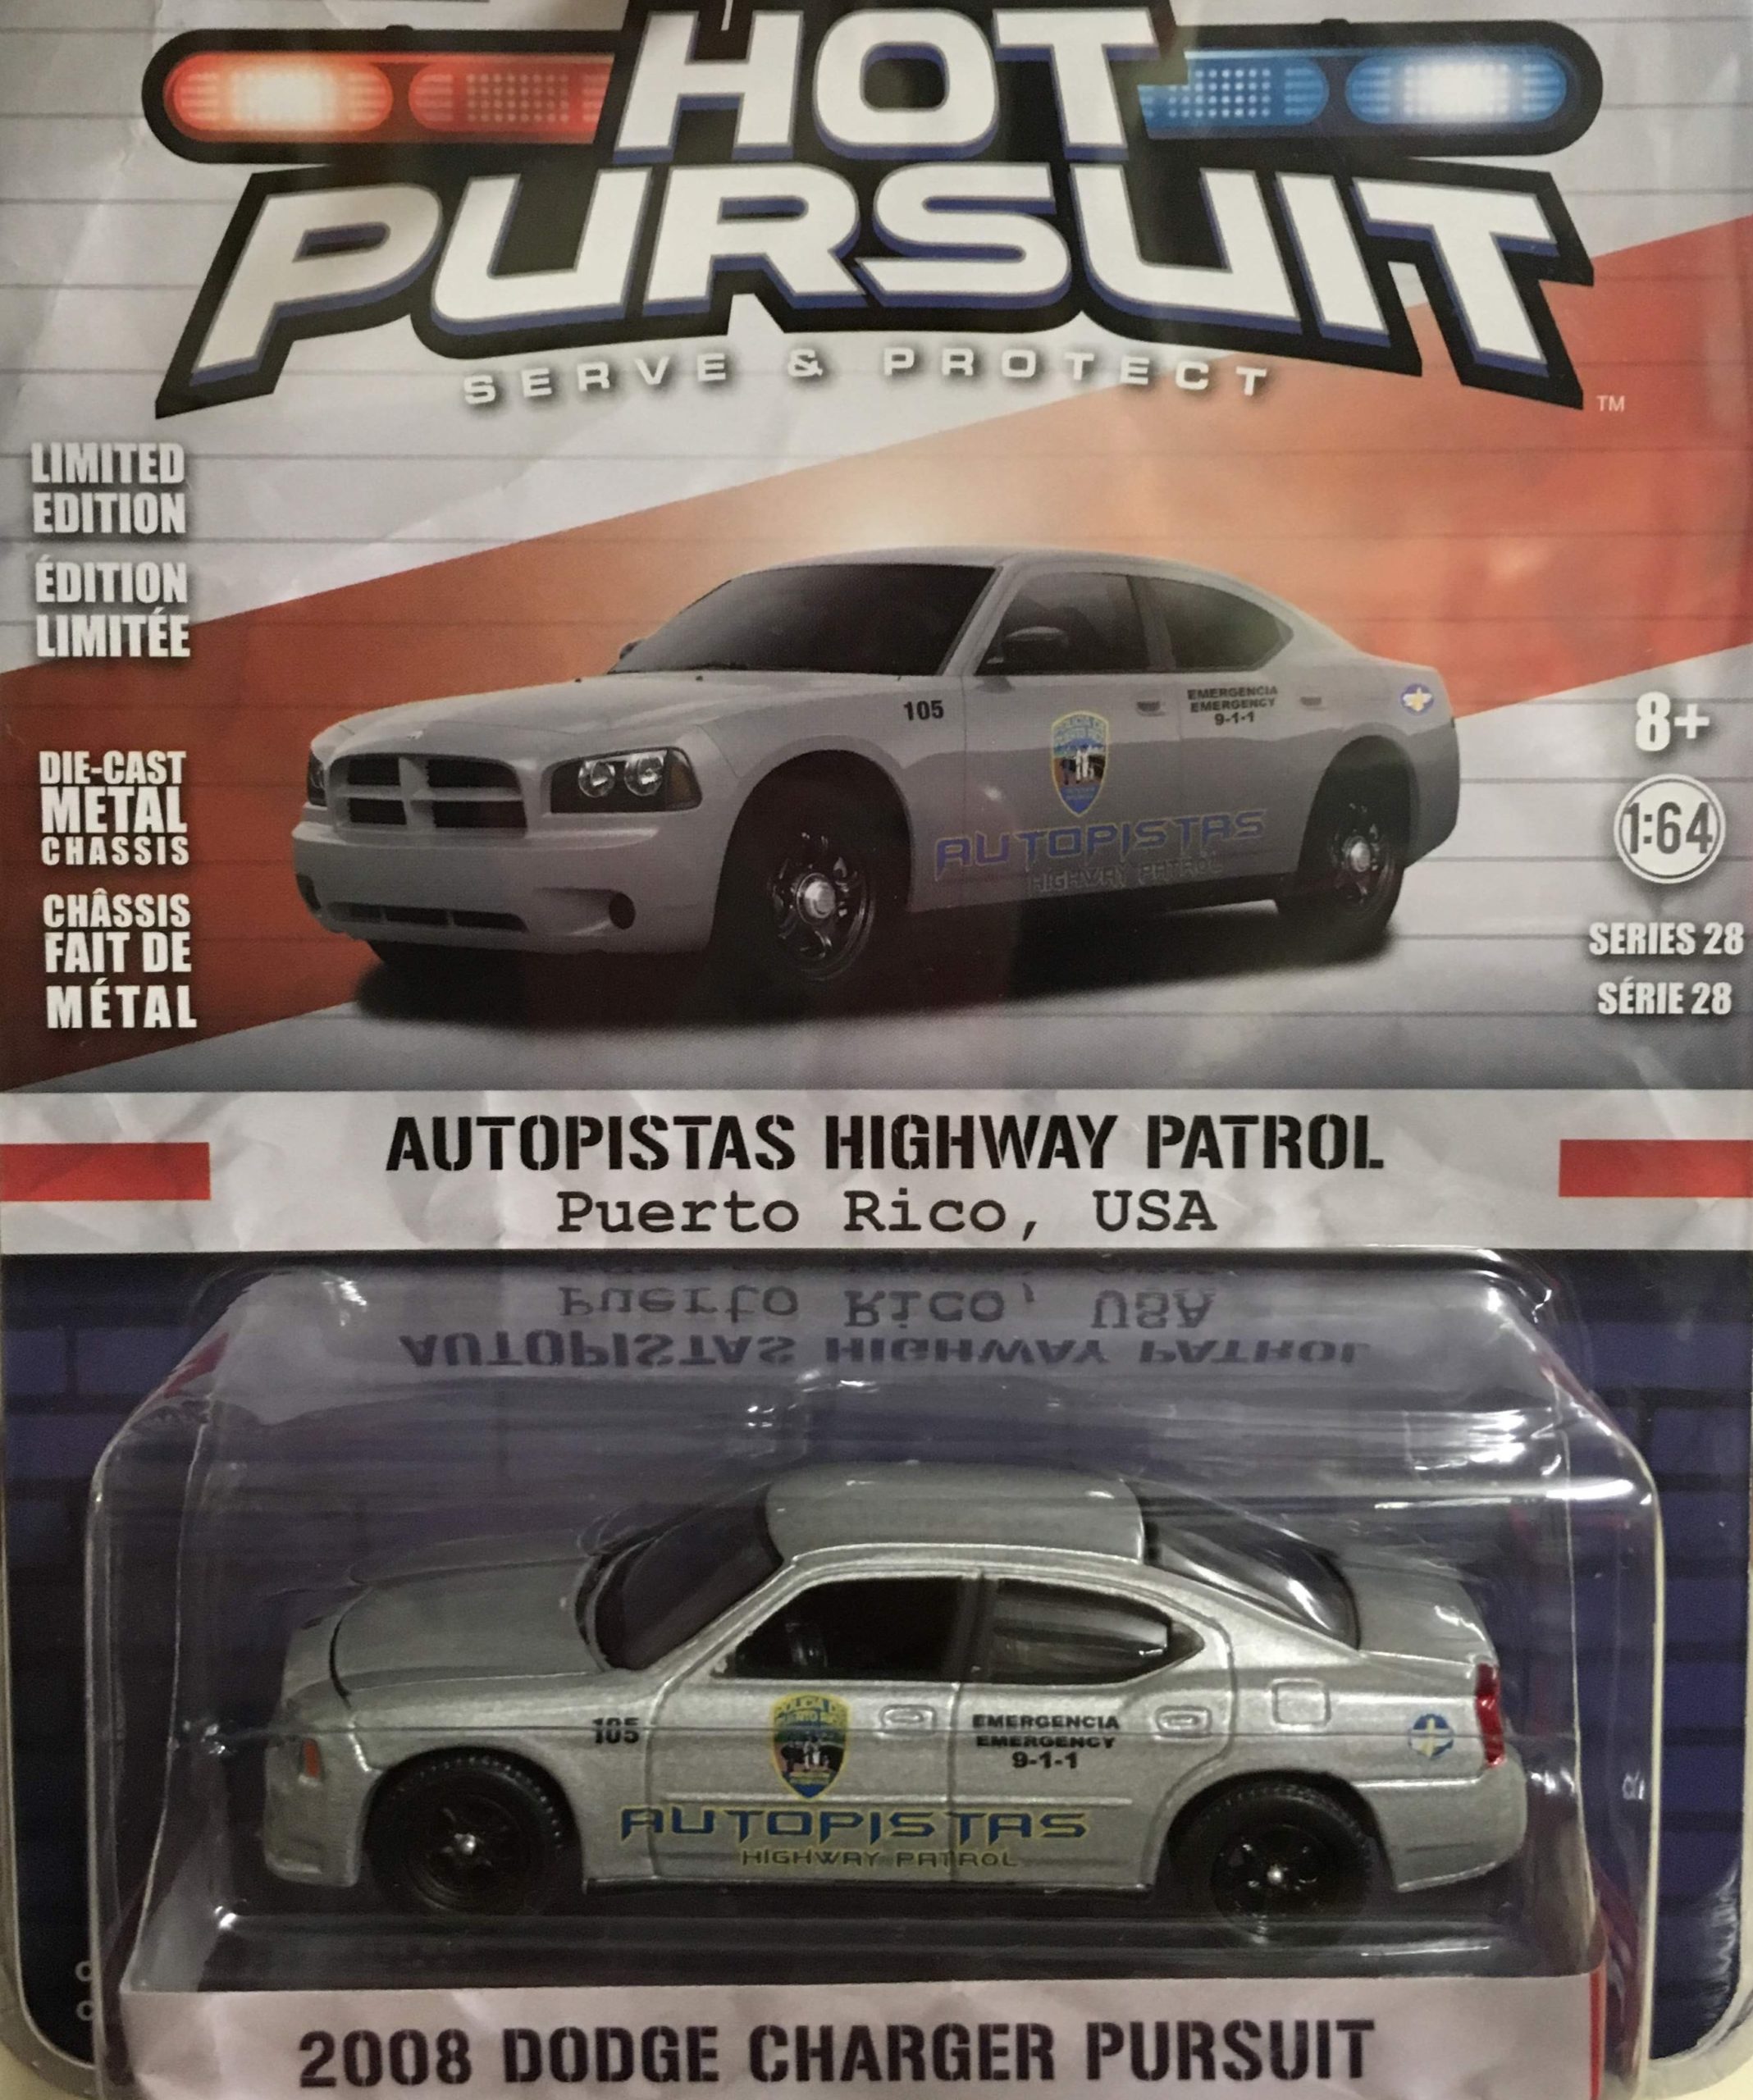 Dodge Charger Pursuit, 2008 Autopistas HWP 1:64 scale